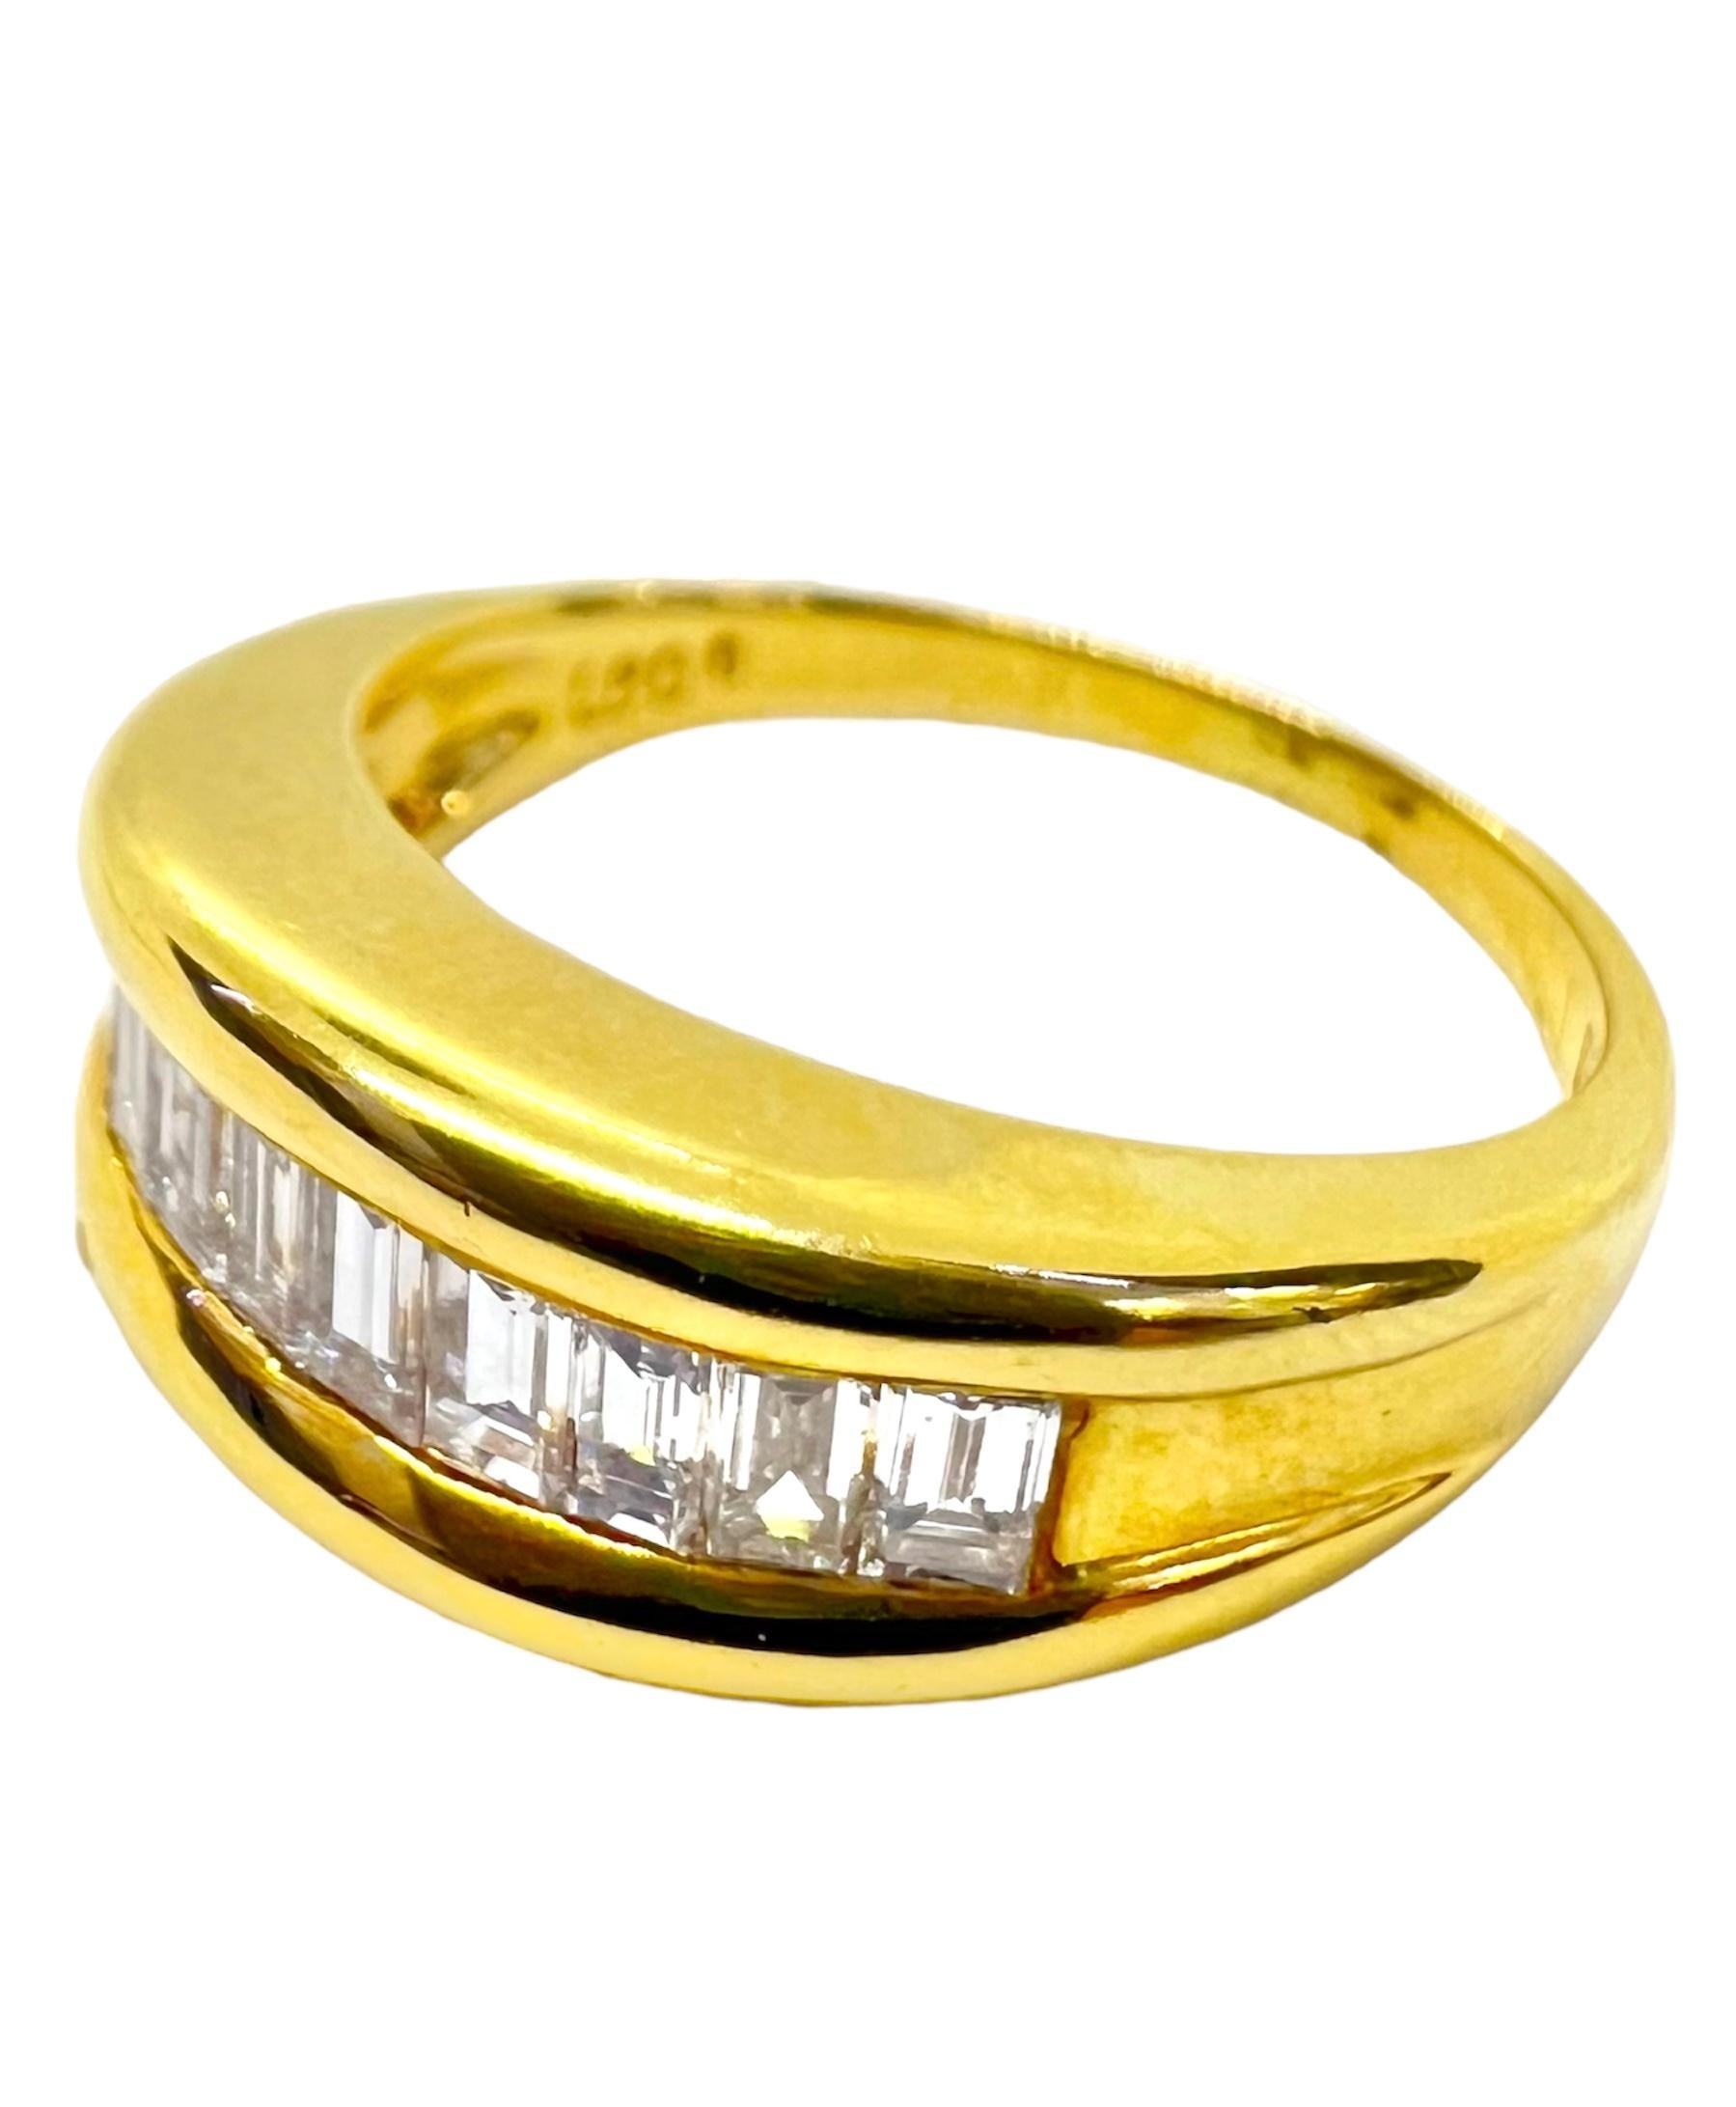 Bague en or jaune 18K avec des diamants de taille émeraude.

Sophia D by Joseph Dardashti Ltd est connue dans le monde entier depuis 35 ans et s'inspire du design classique de l'Art déco qui fusionne avec les techniques de fabrication modernes.